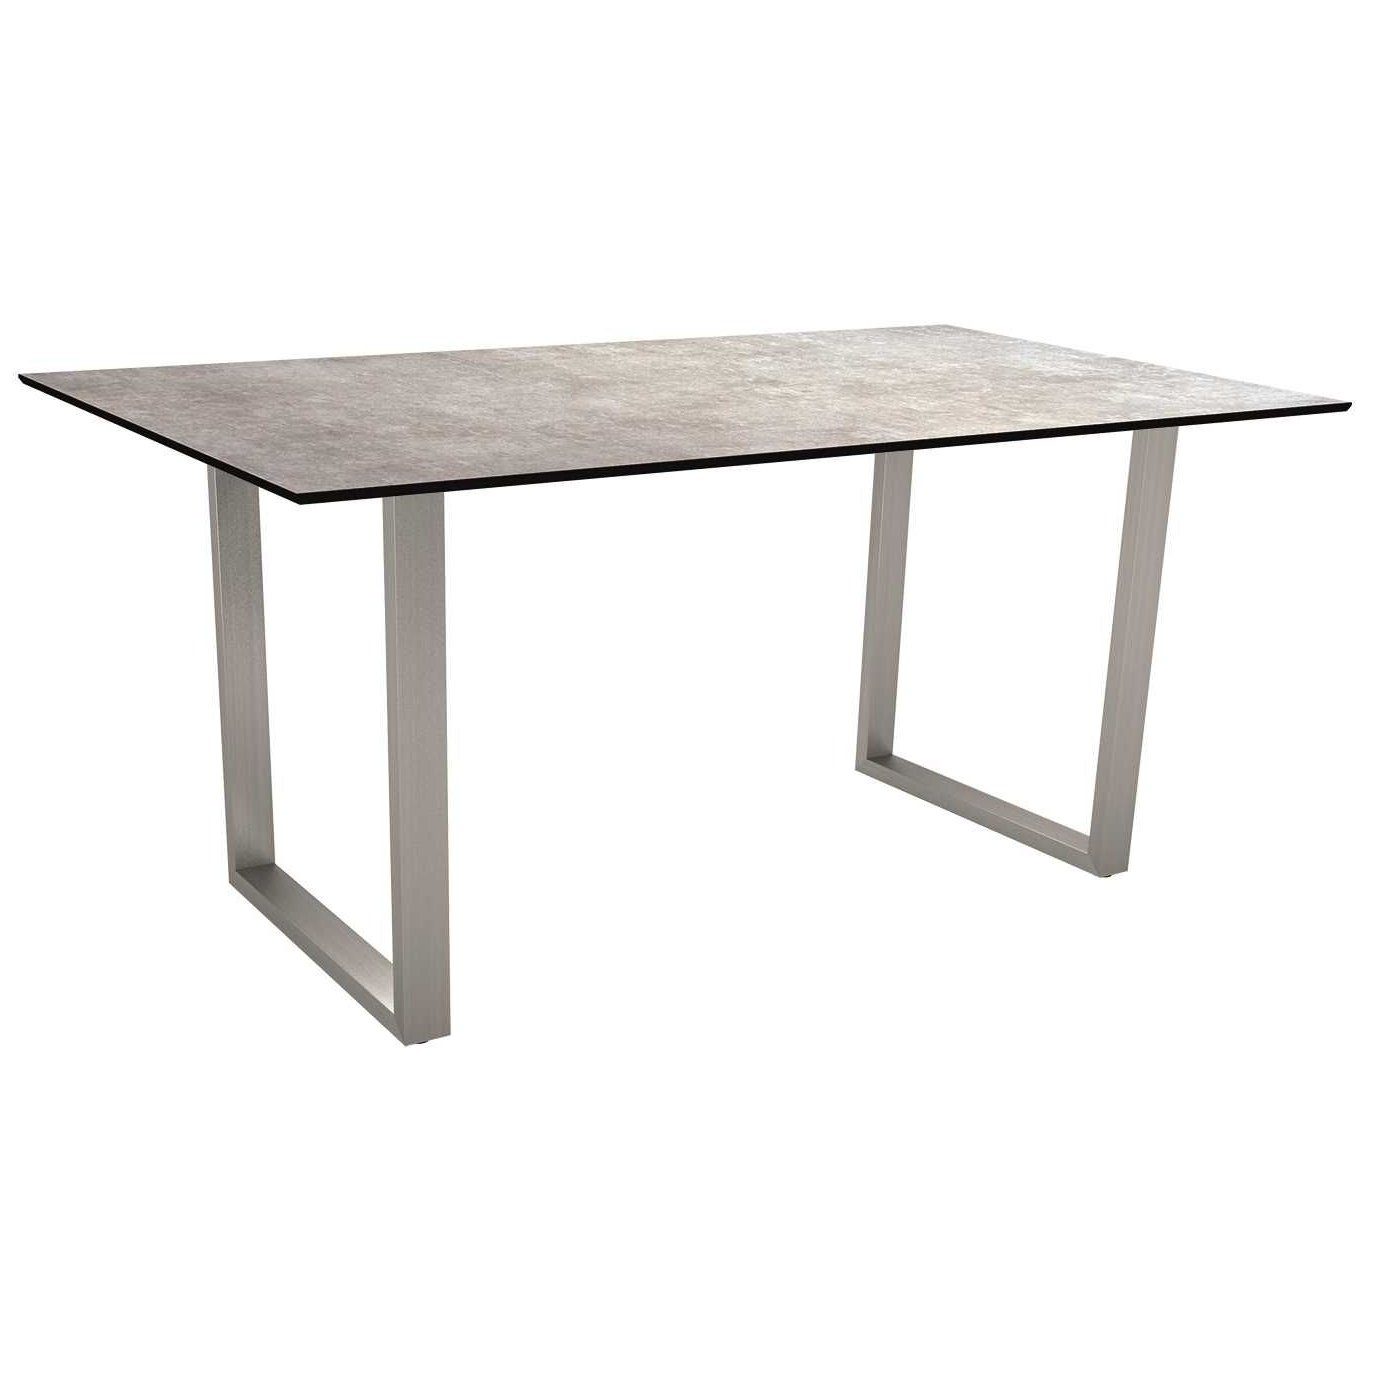 Stern Kufentisch, Gestell Edelstahl, Tischplatte HPL Metallic grau, Tischgröße: 160x90 cm